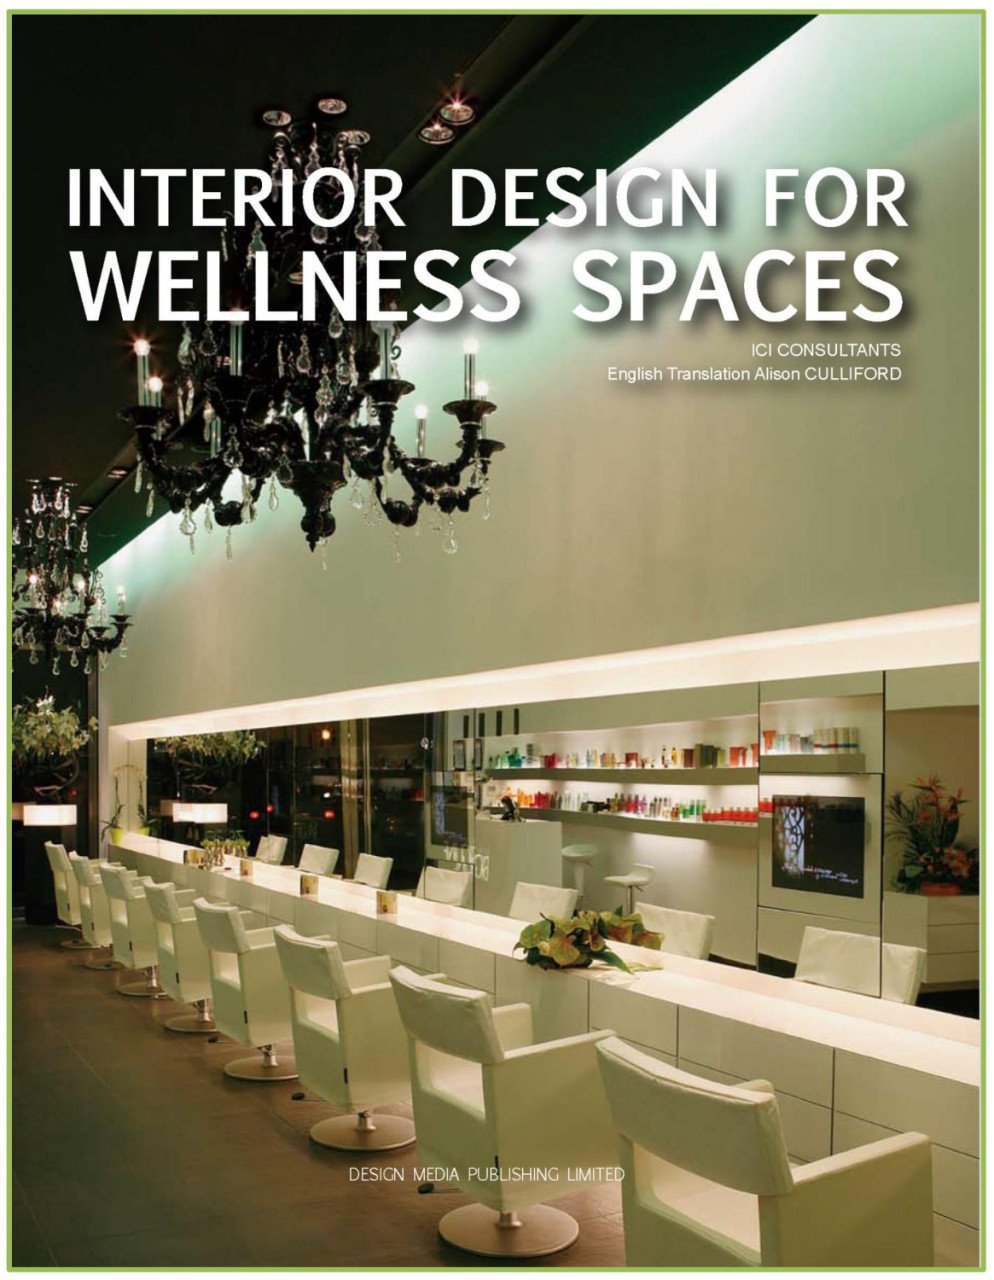 Interior Design for Wellness Space (Dinlenme Alanlarında İç Tasarım)